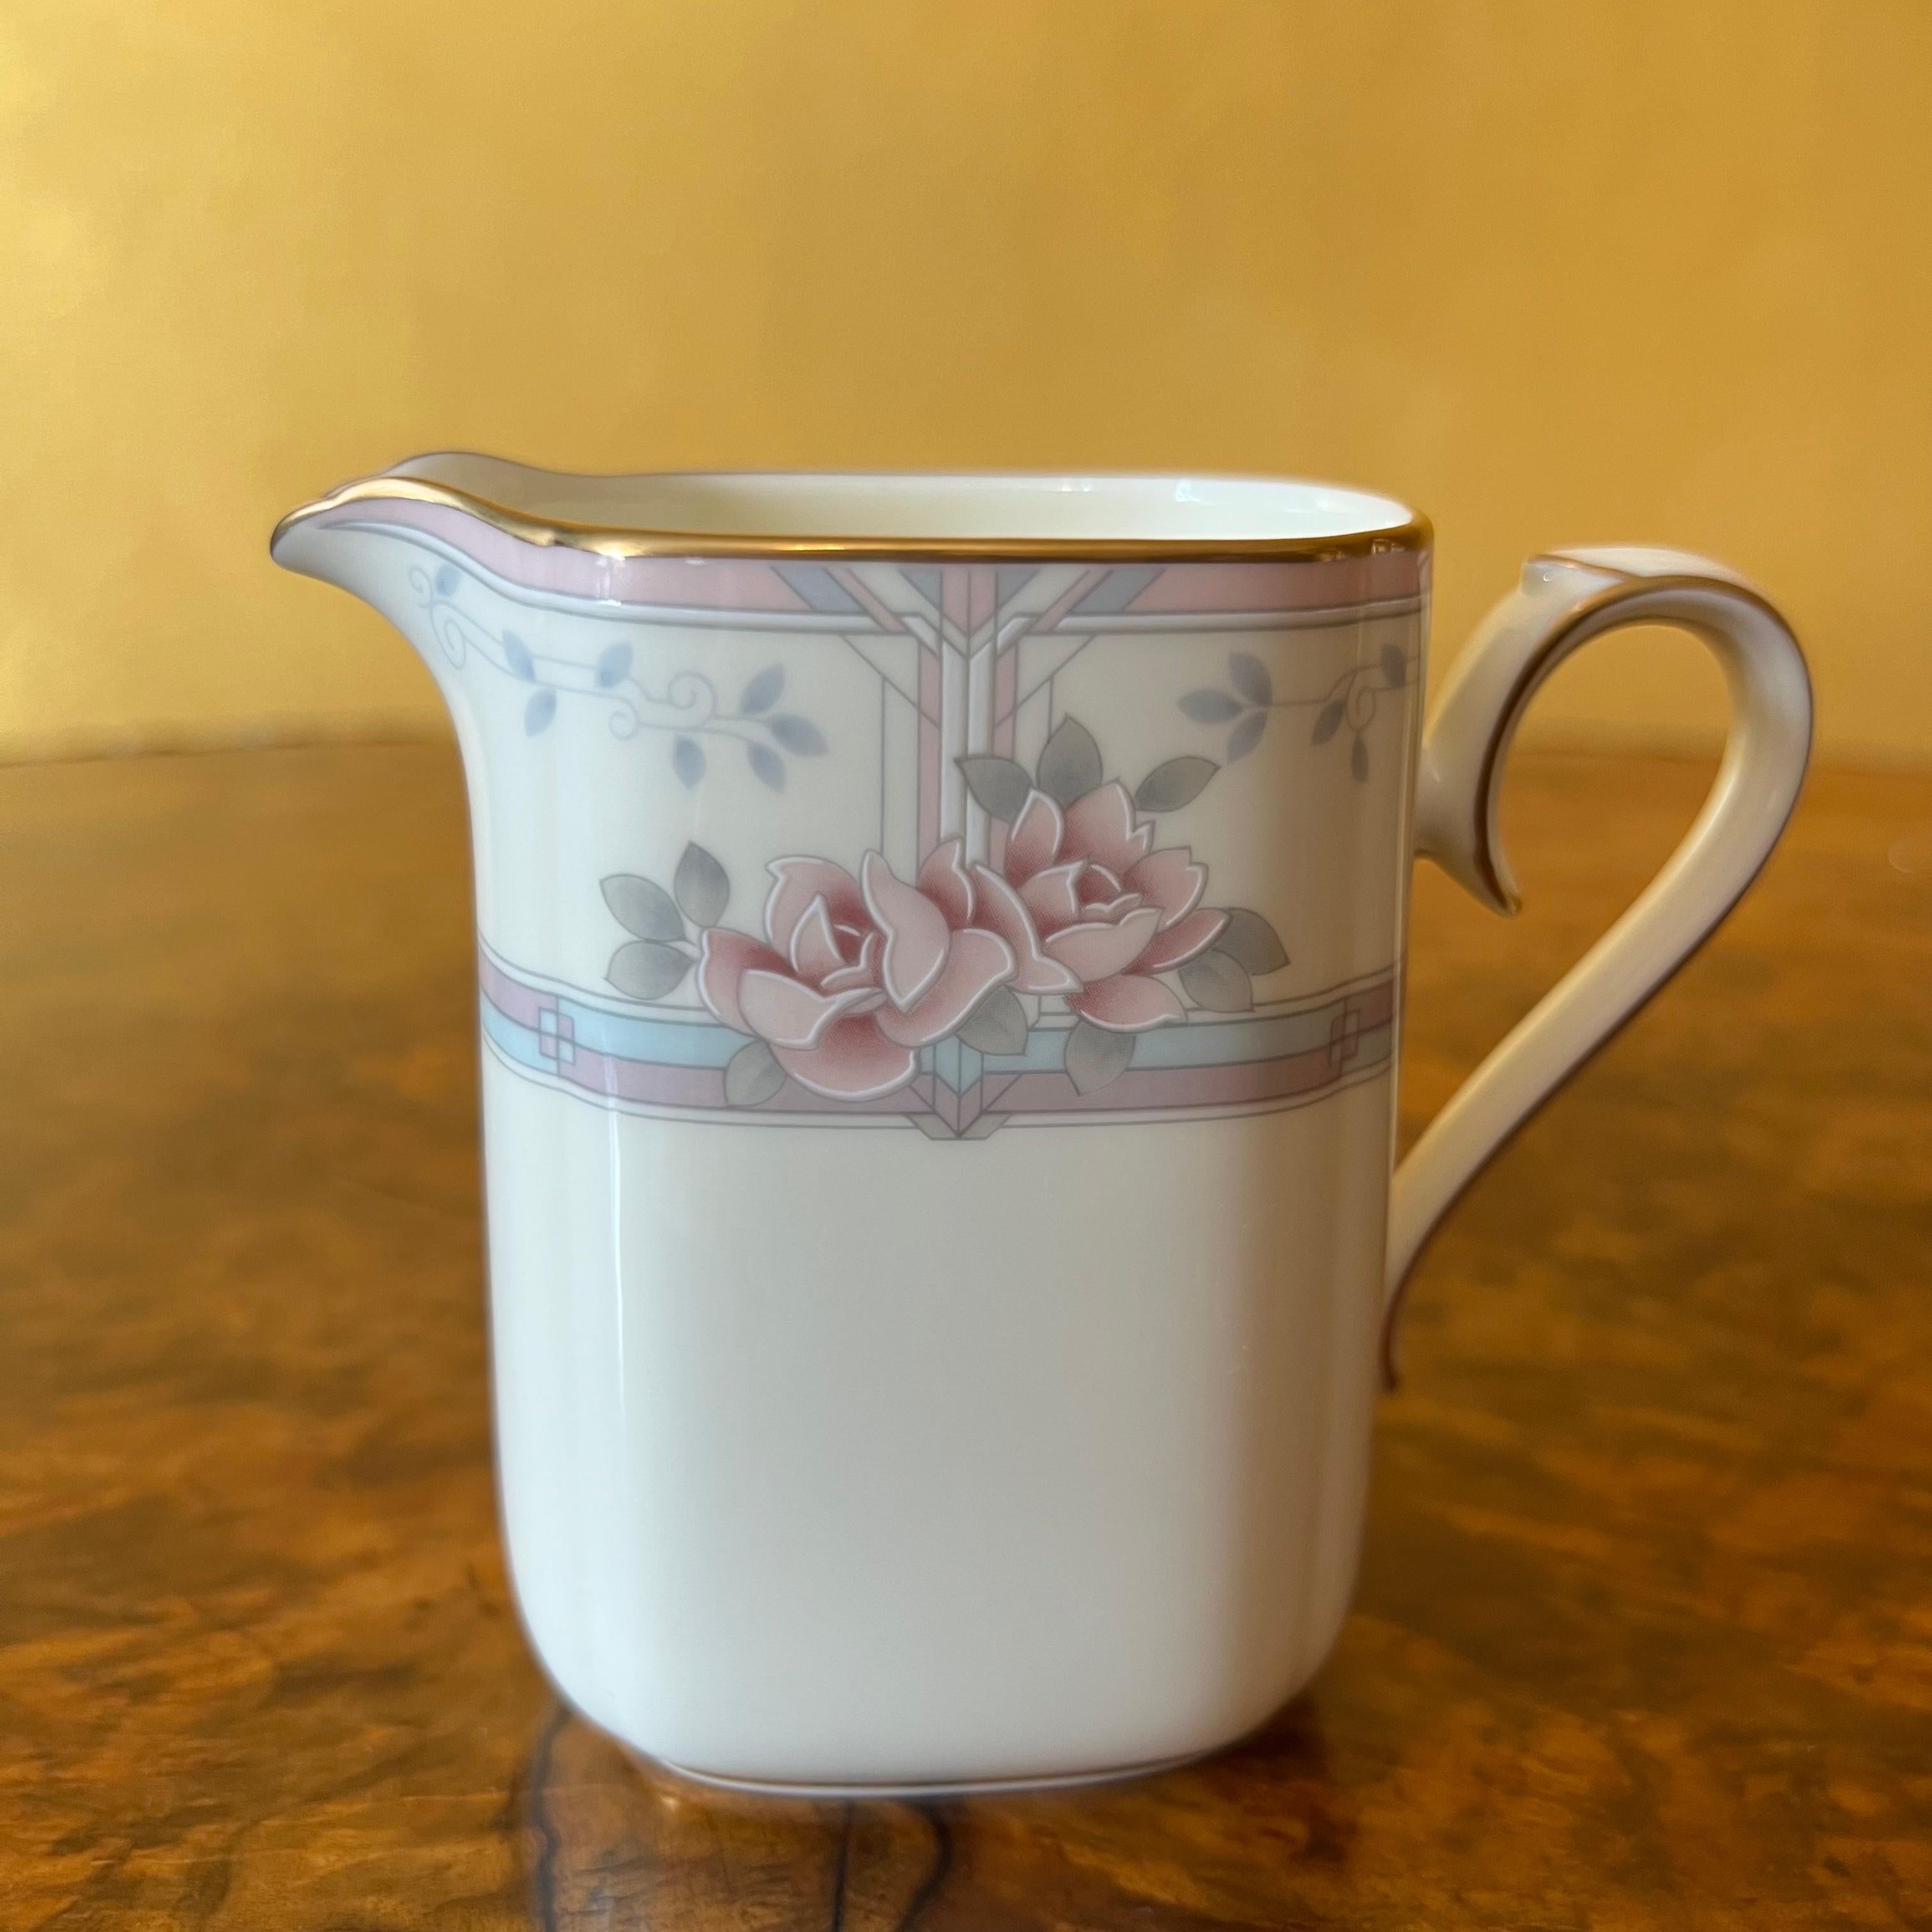 noritake tea set price in pakistan